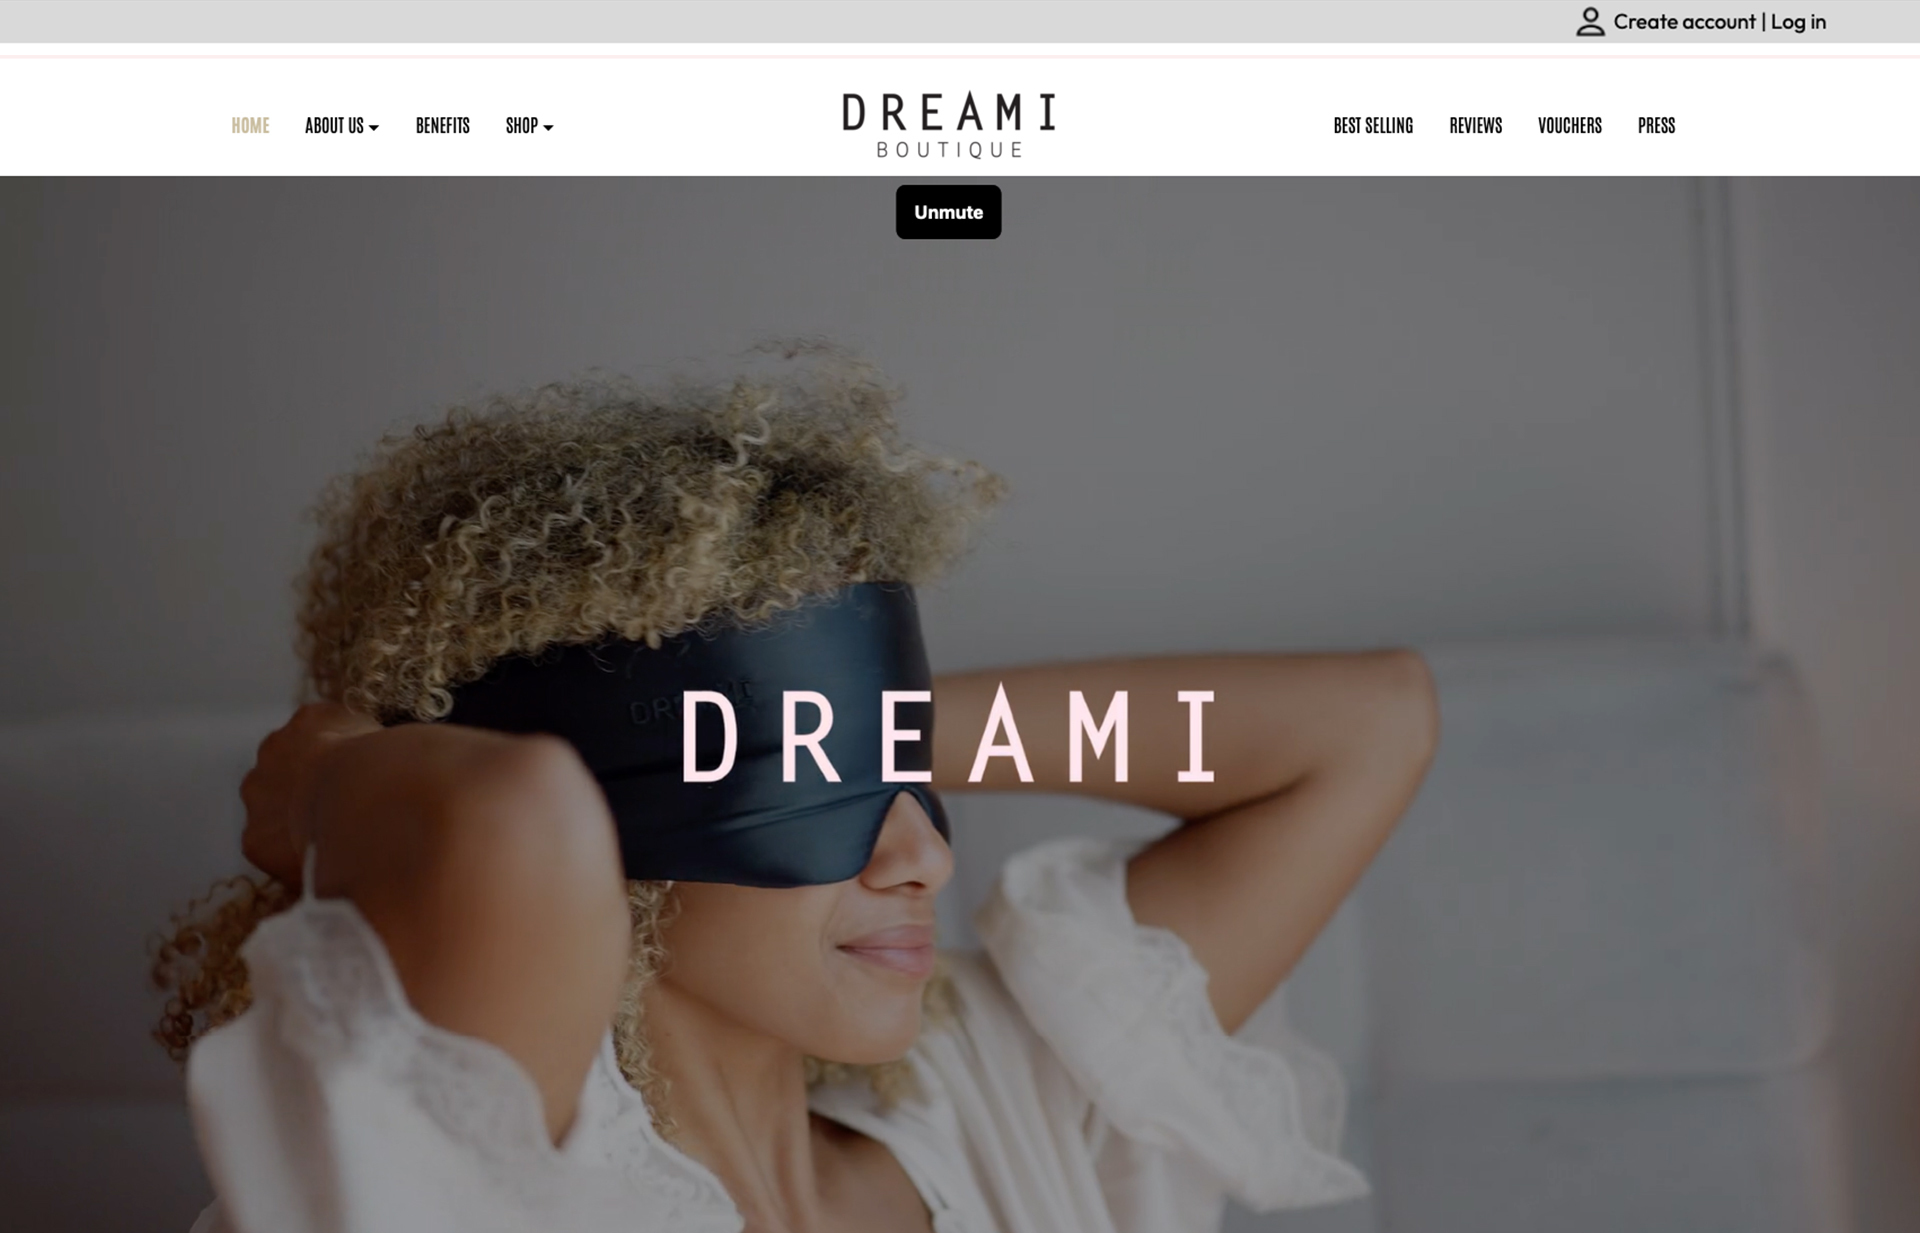 DREAMI bespoke Shop website